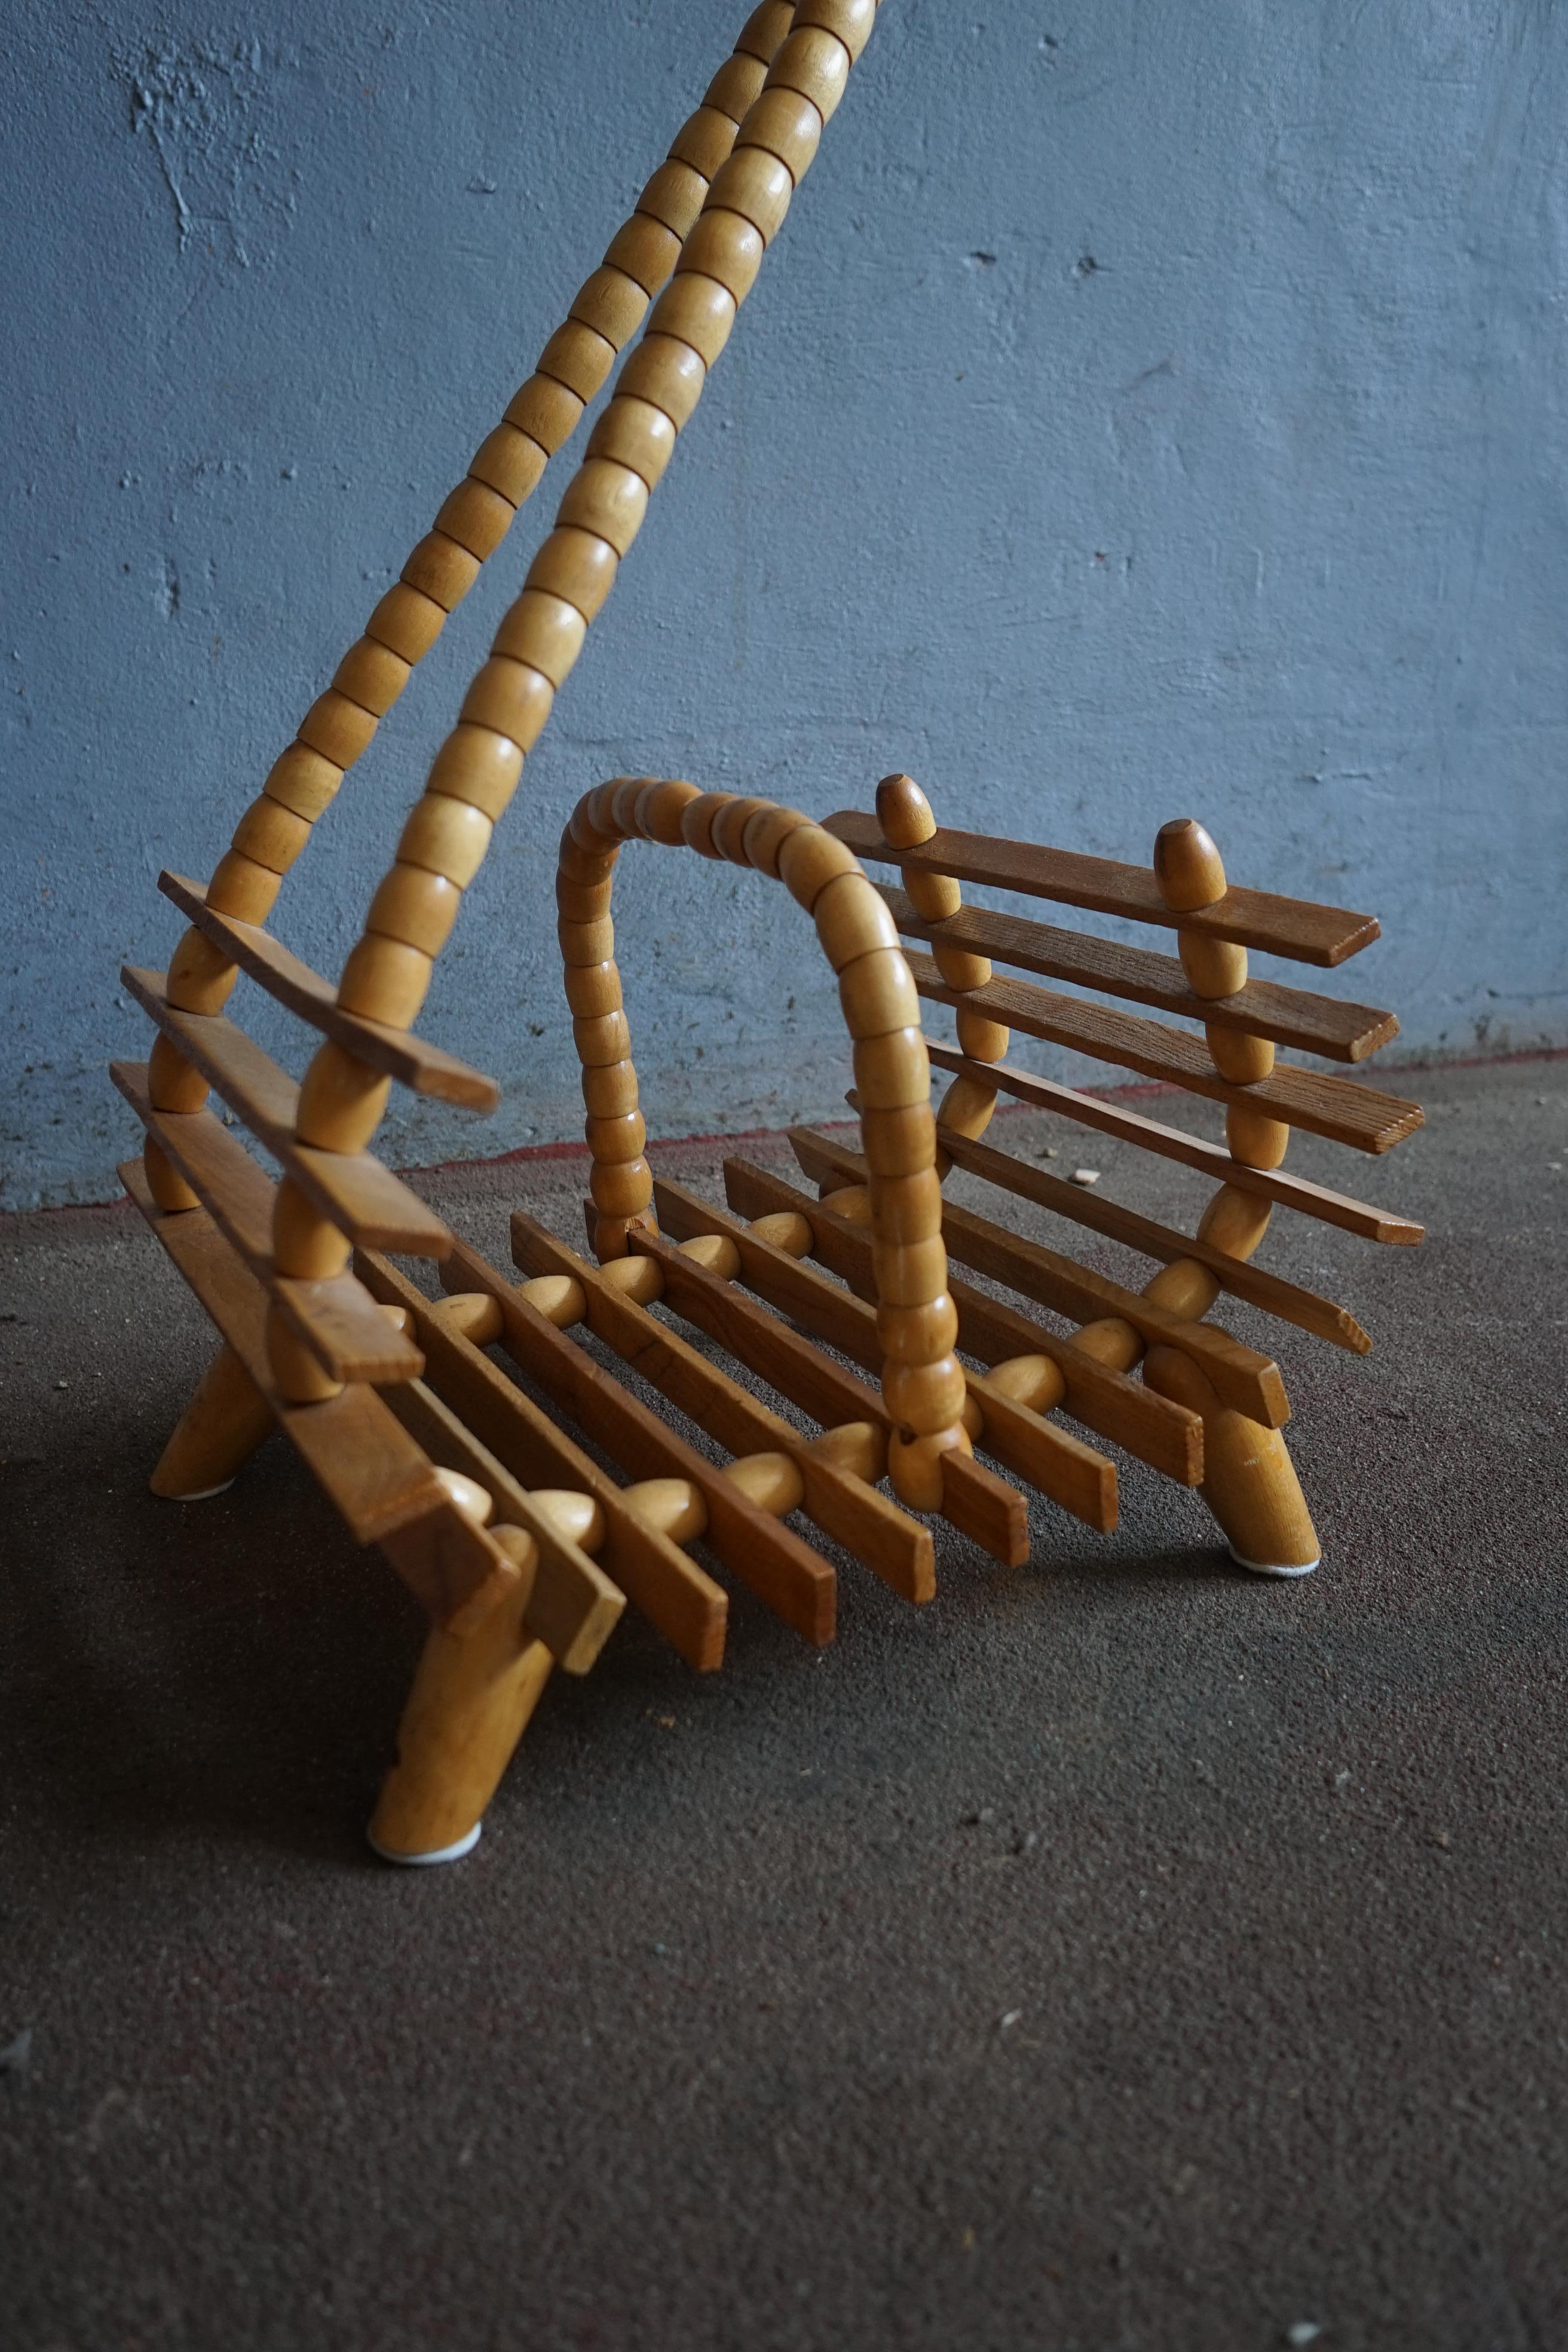 Table d'appoint peu commune fabriquée en Suède dans les années 1970, conçue pour être utilisée comme support de plantes ou pour accueillir votre vase préféré.
Le vase est fabriqué à partir de plusieurs pièces de bois tournées par un artisan suédois